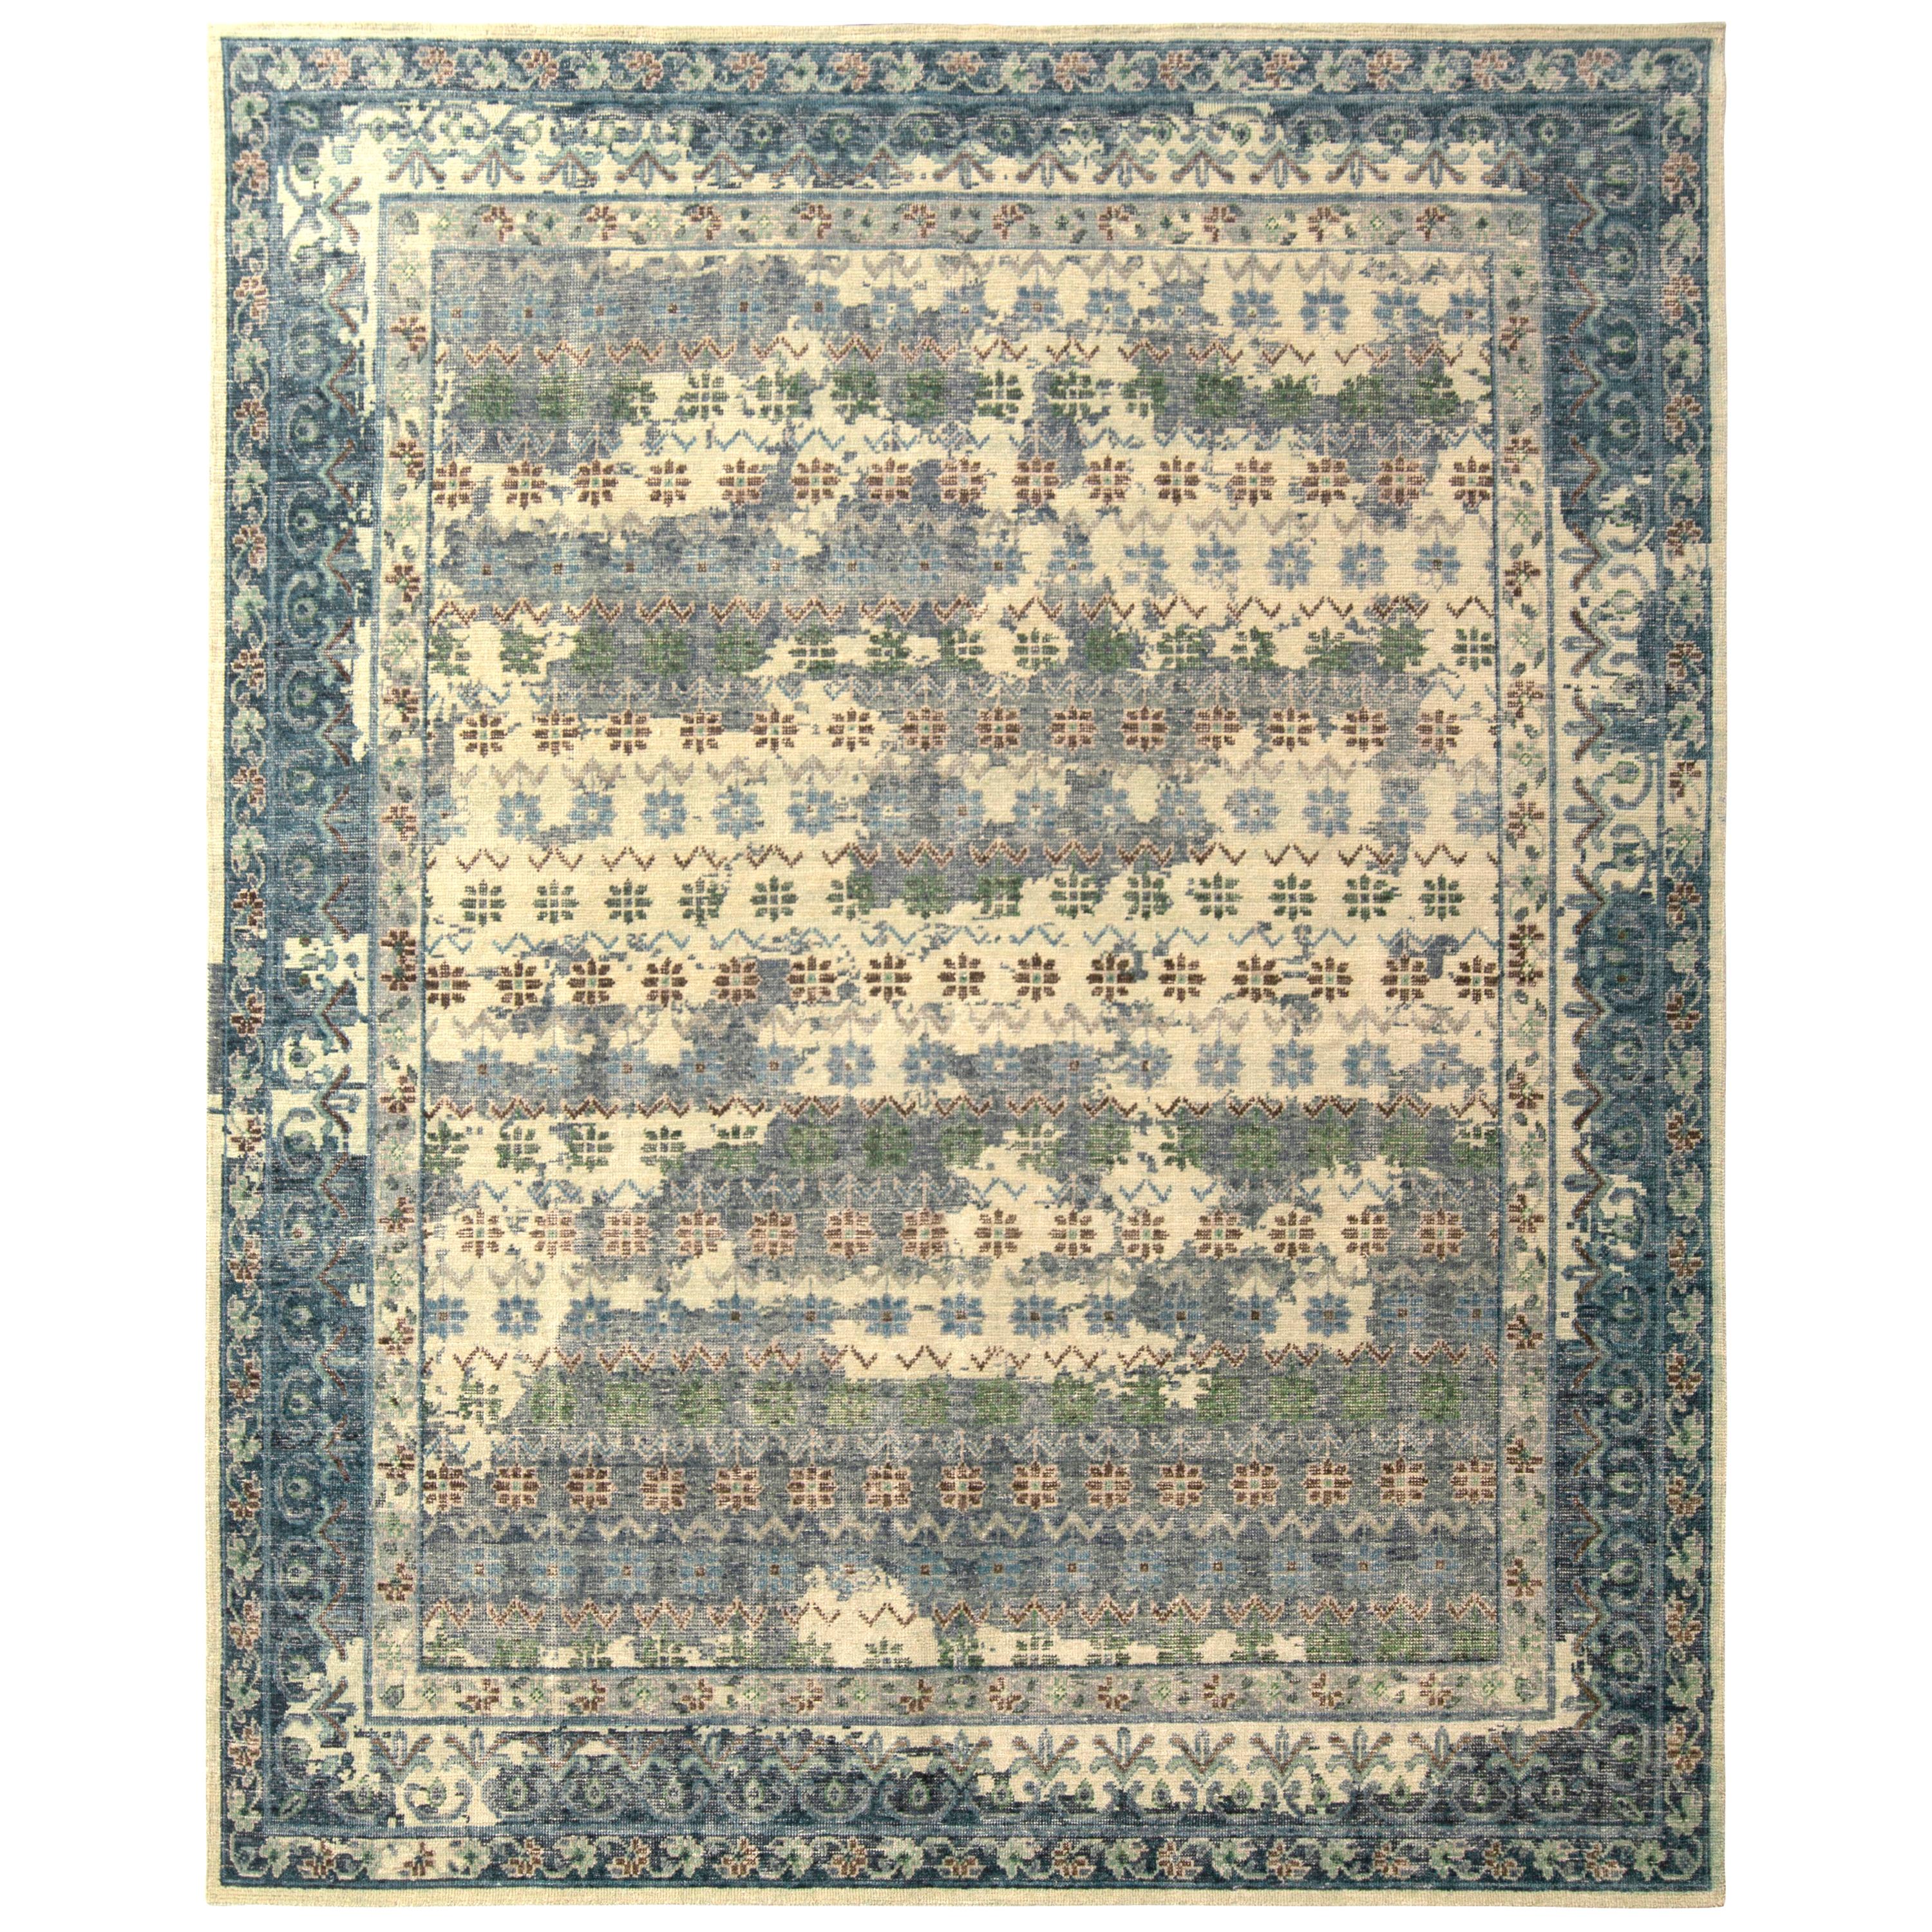 Dieser handgeknüpfte Classic-Teppich gehört zu den jüngsten Ergänzungen der Homage Collection von Rug & Kilim, einer ehrgeizigen Enzyklopädie von Epochen, die eine beispiellose Bandbreite internationaler Stile, darunter orientalische Muster mit